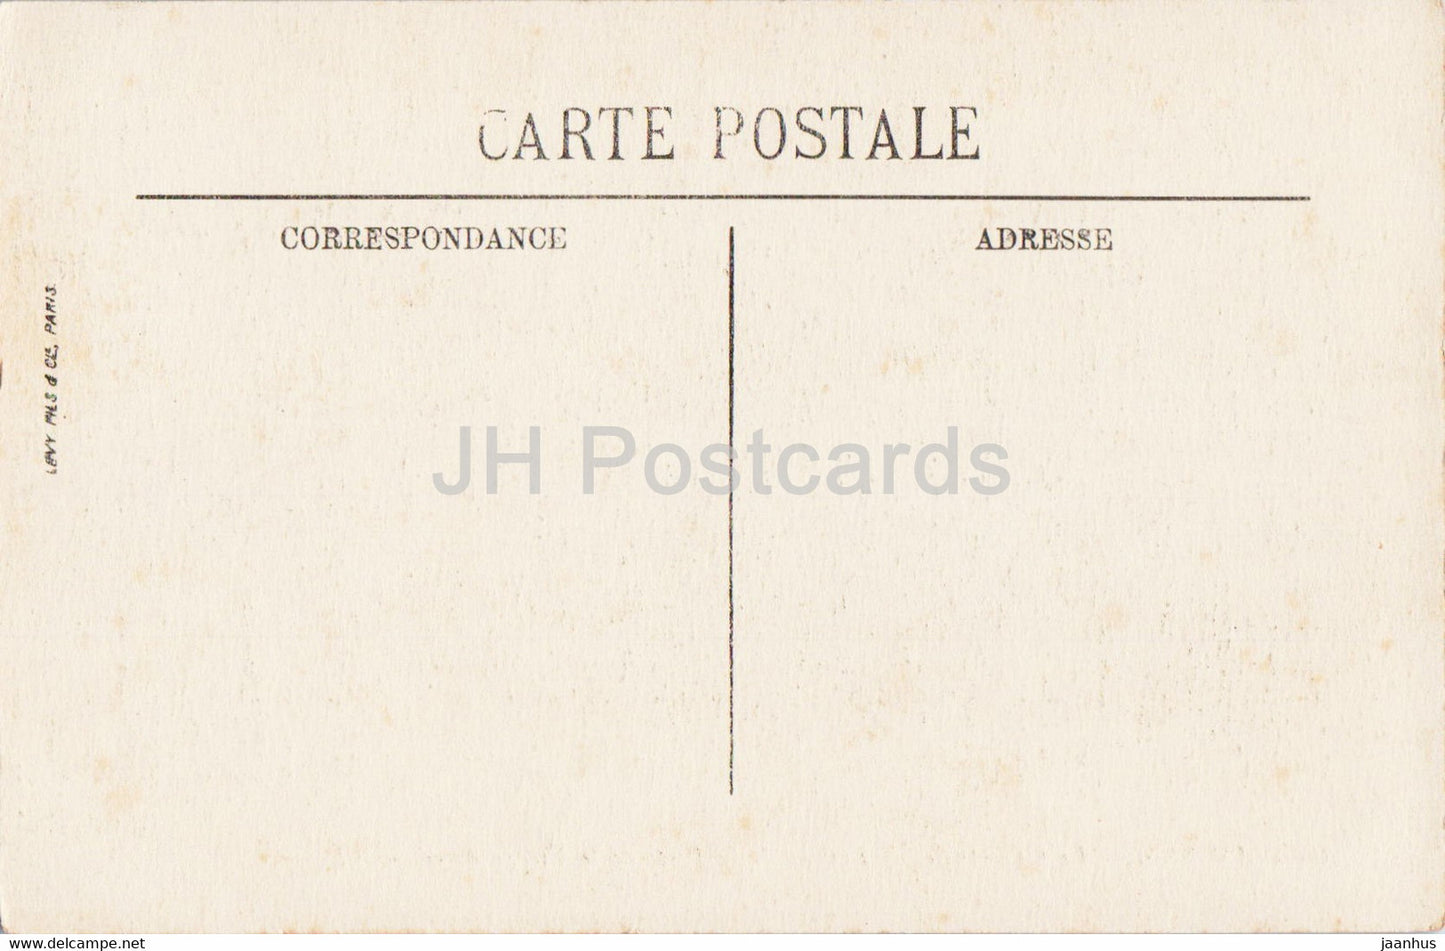 Amiens - La Cathedrale - Linteau de la Porte de la Vierge doree - 205 - cathedral - old postcard - France - unused